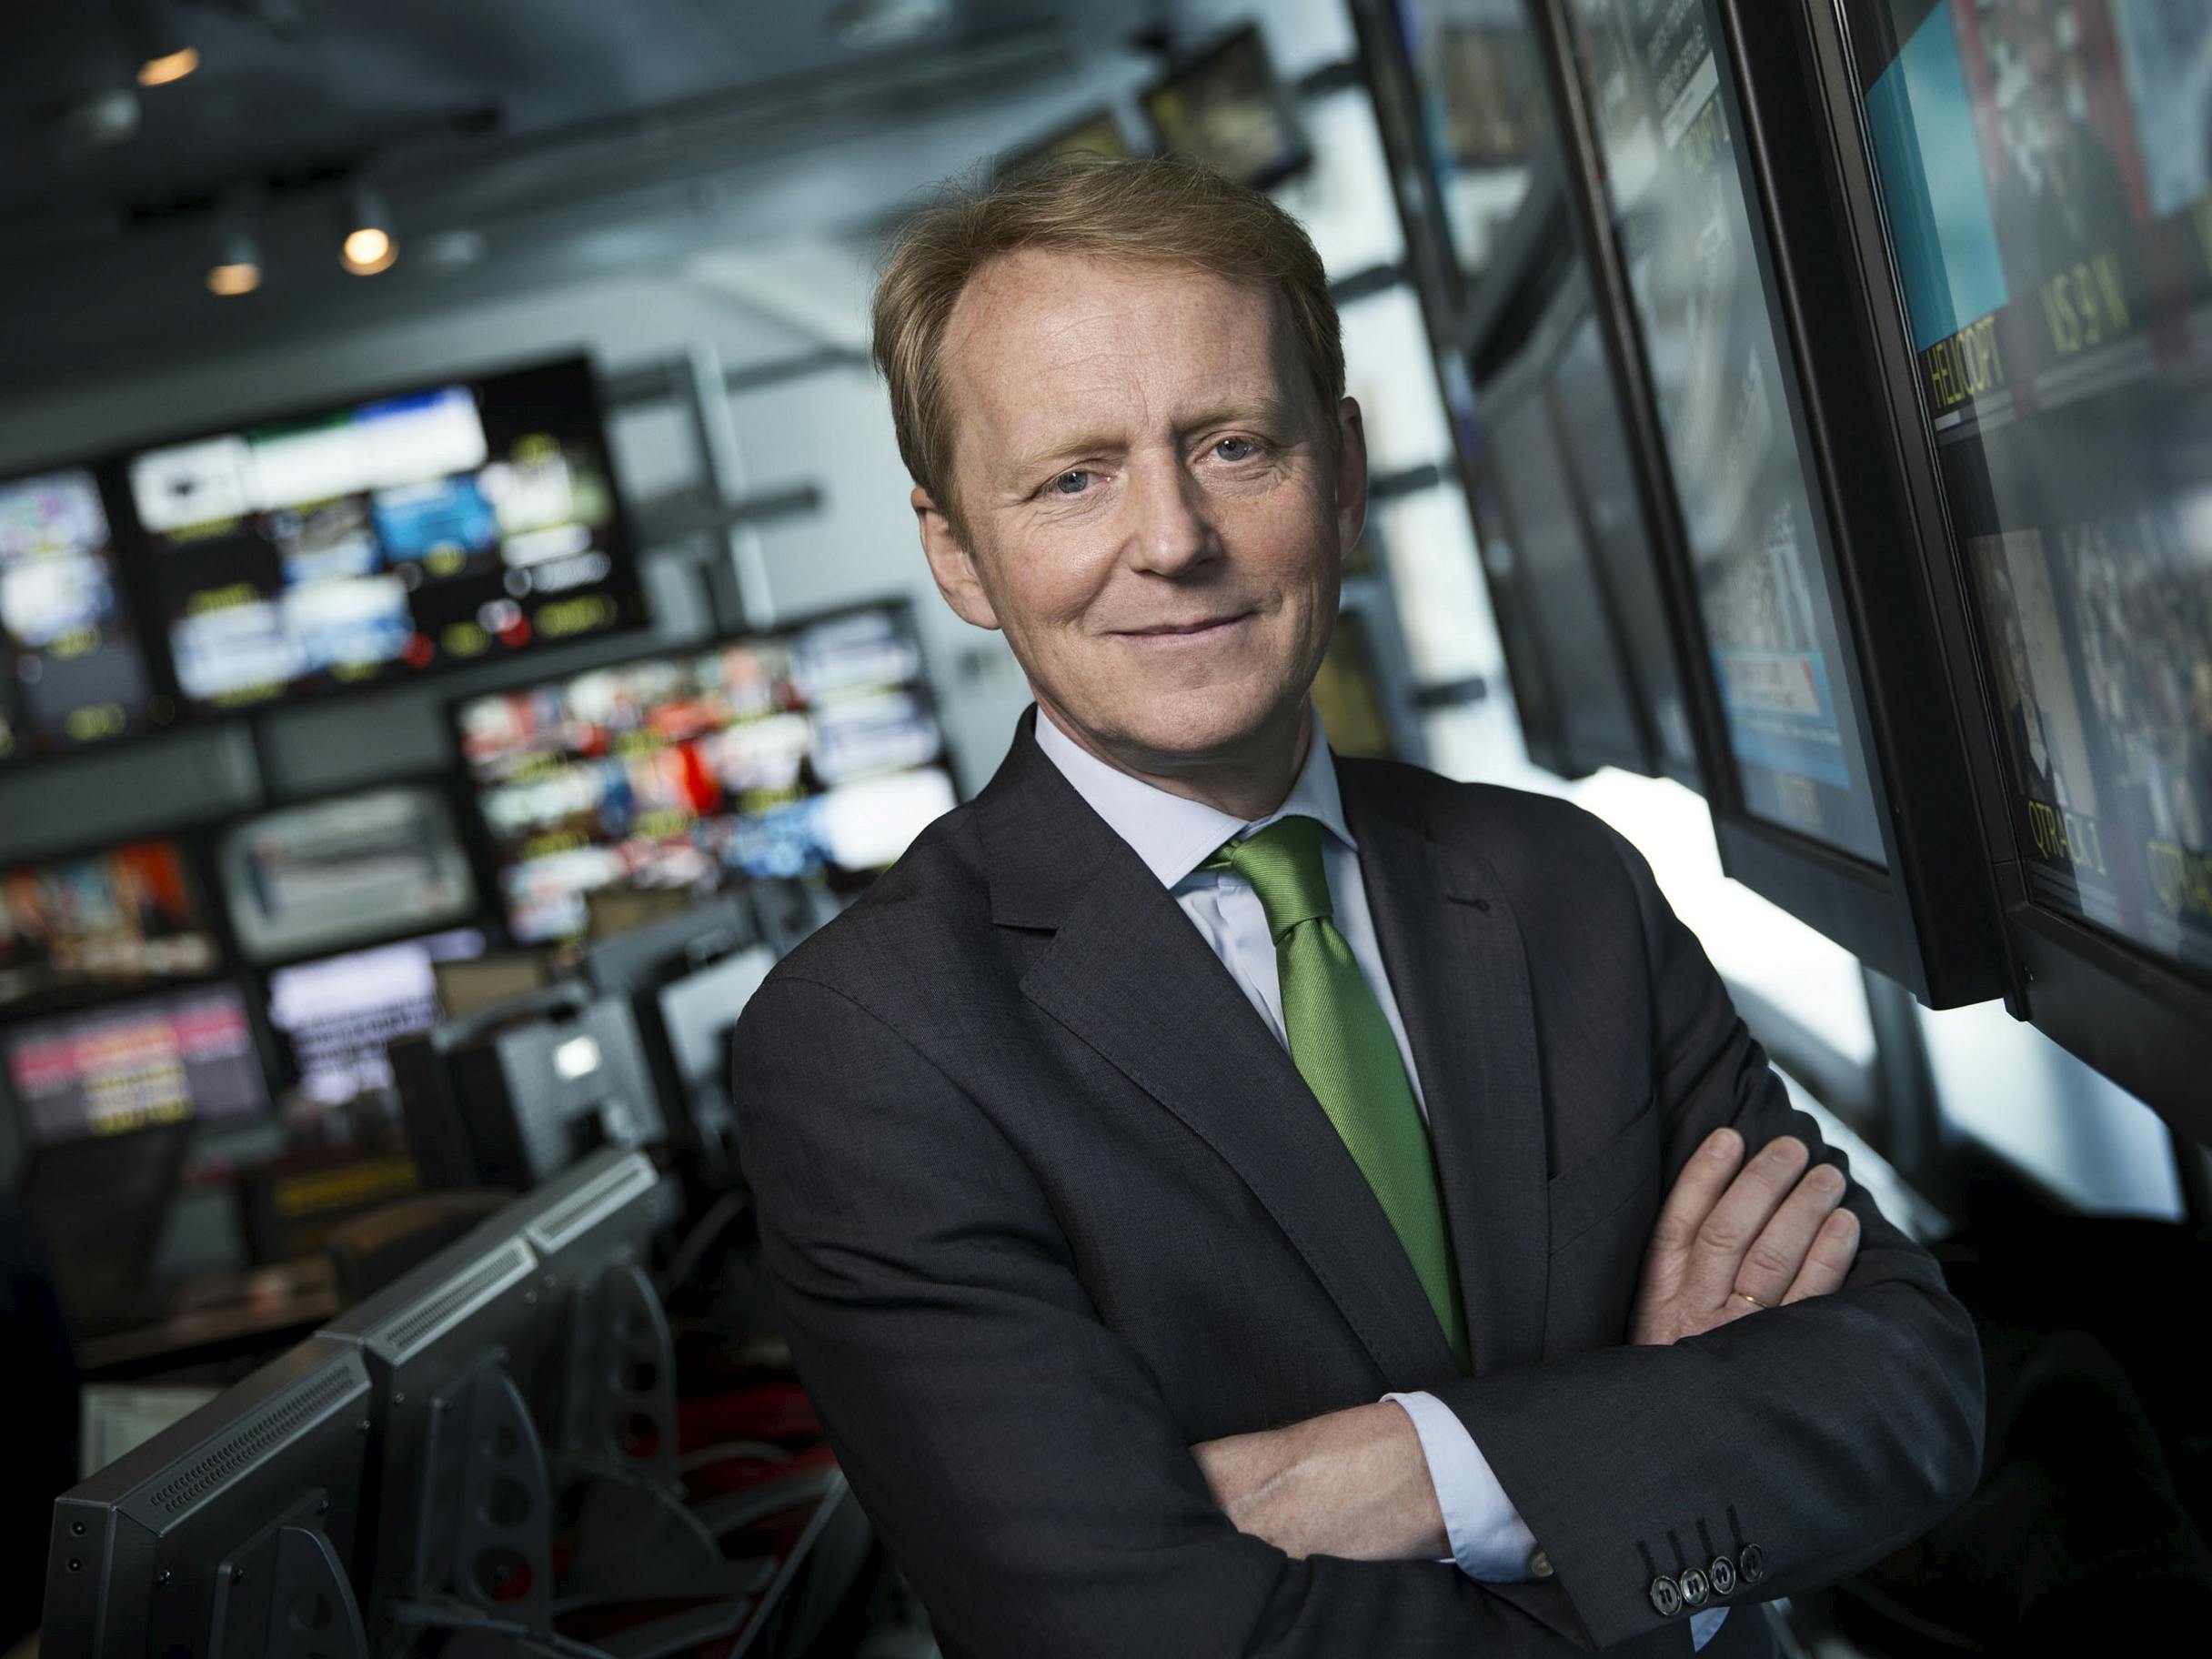 Den erfarne nyhedsvært Poul Erik Skammelsen har scoret en ny tjans på TV 2.